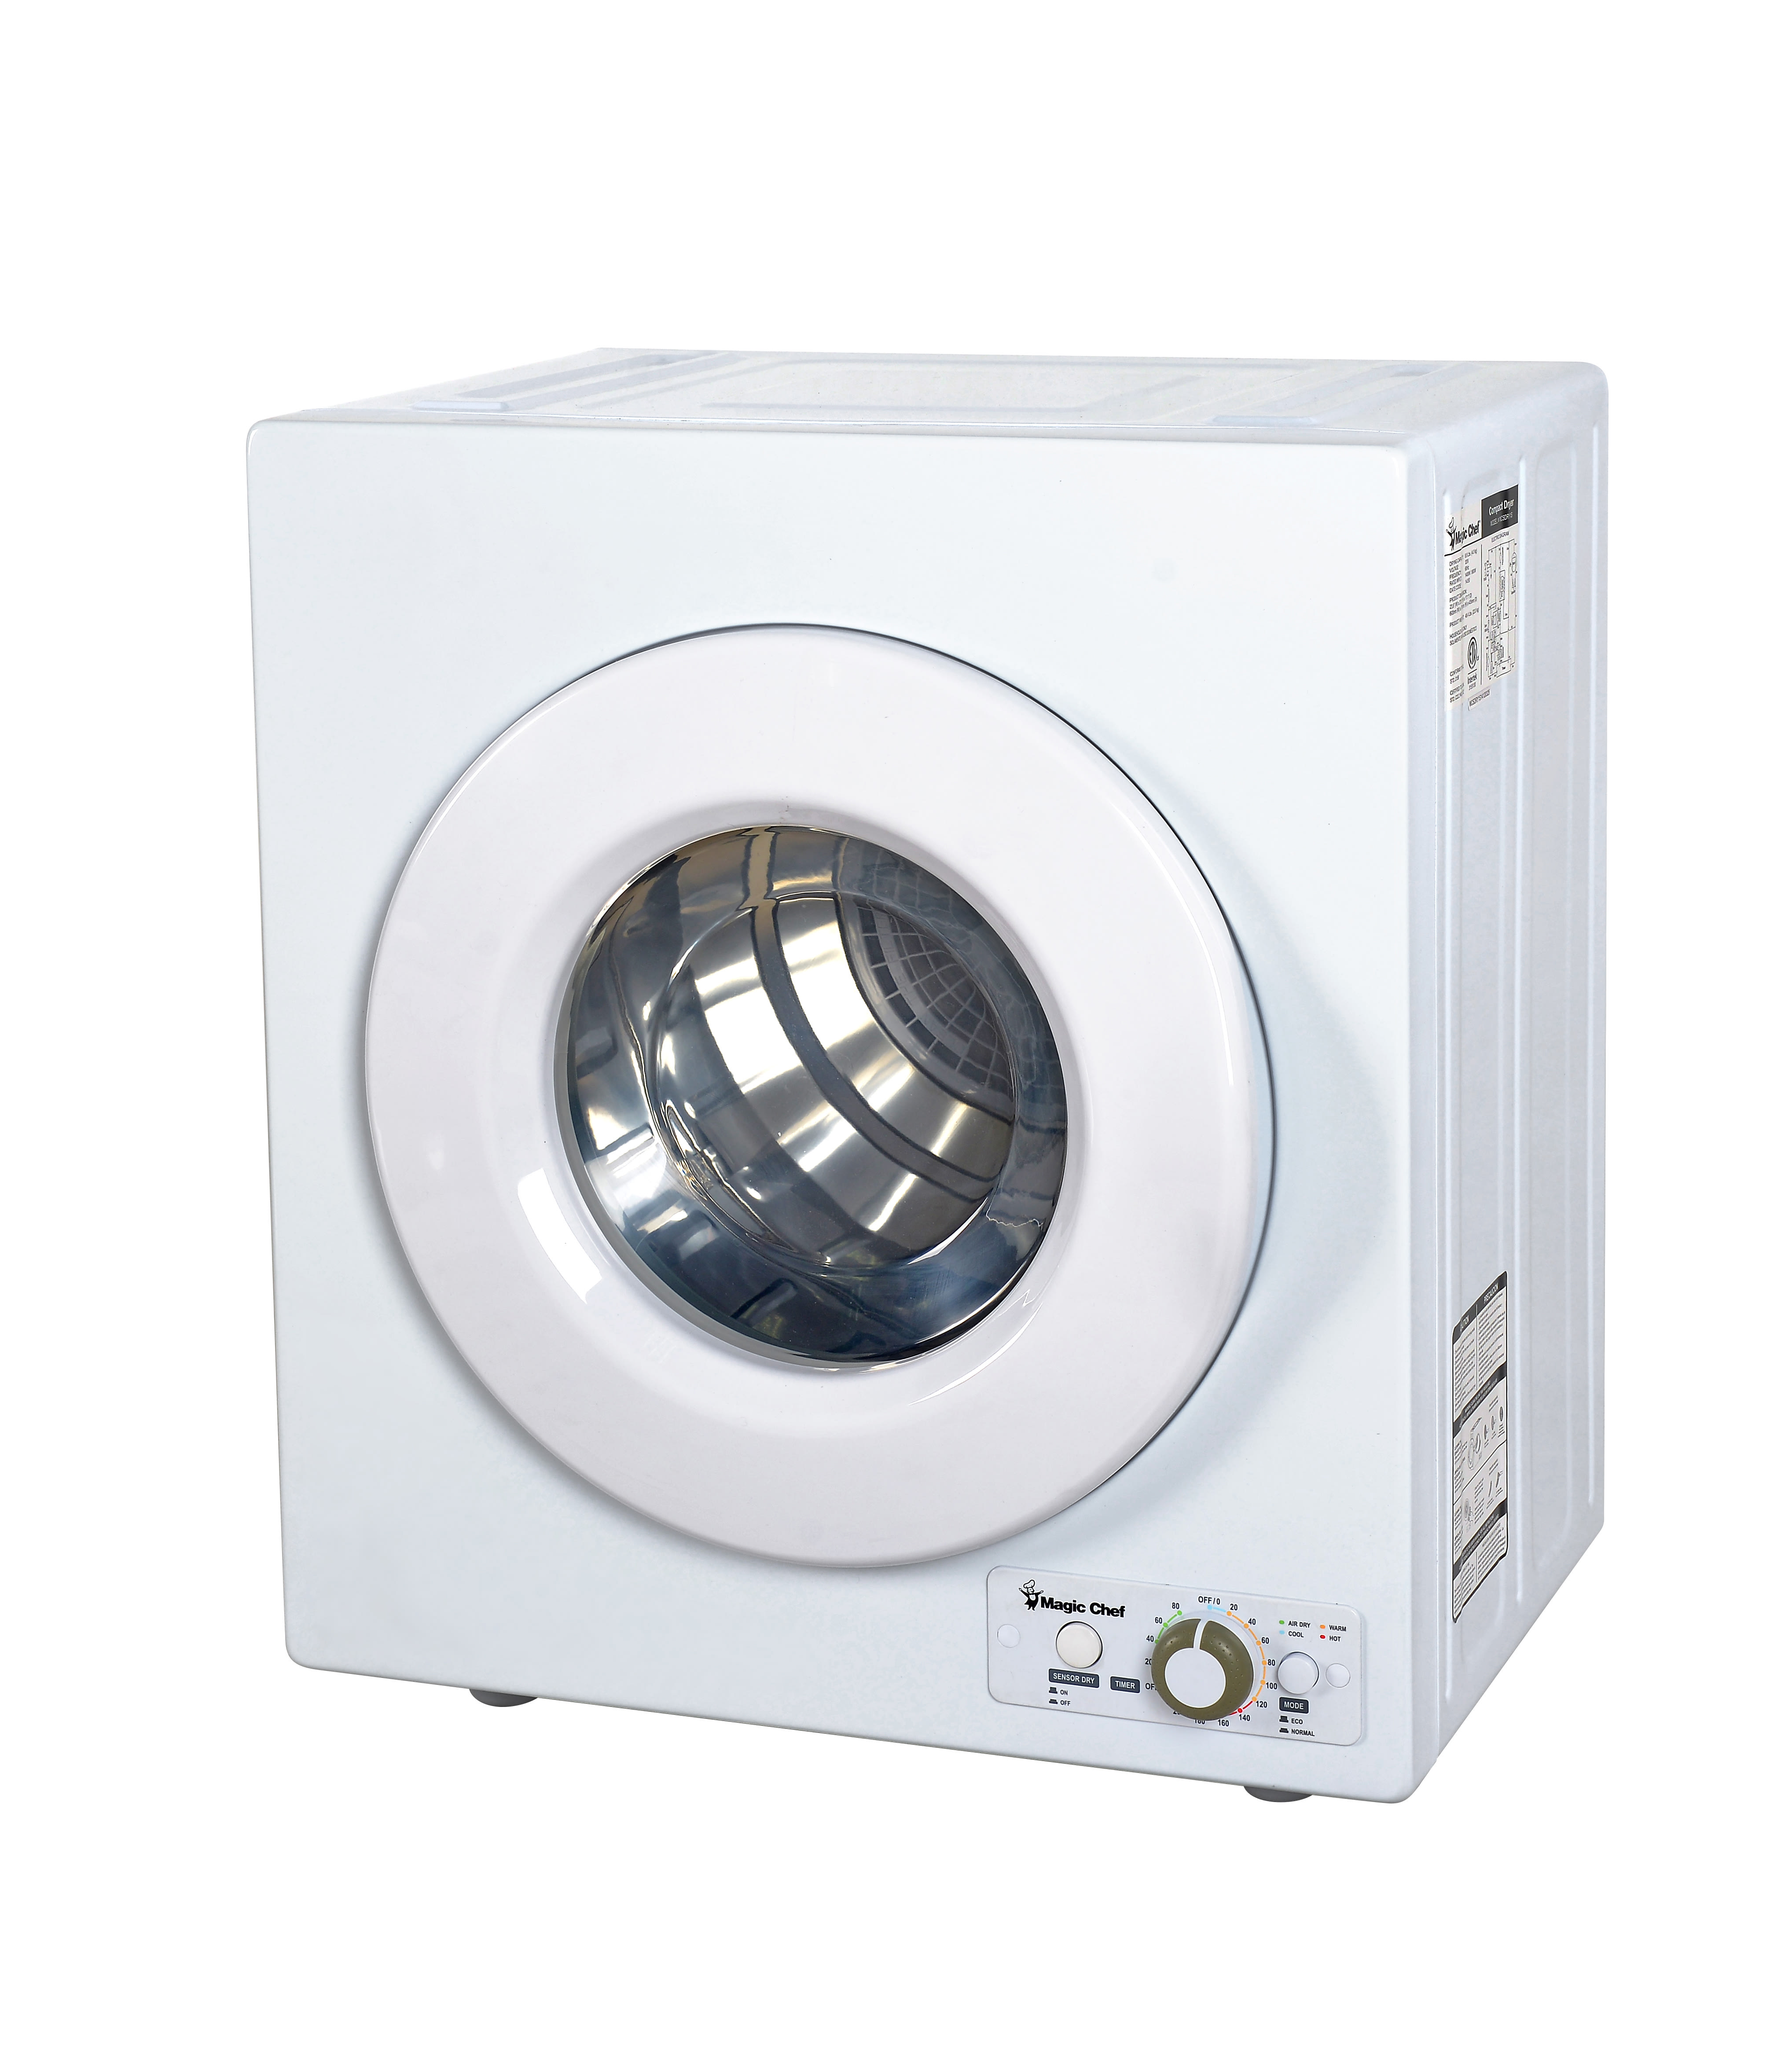 Avanti 2.6 cu. ft. Compact Clothes Dryer